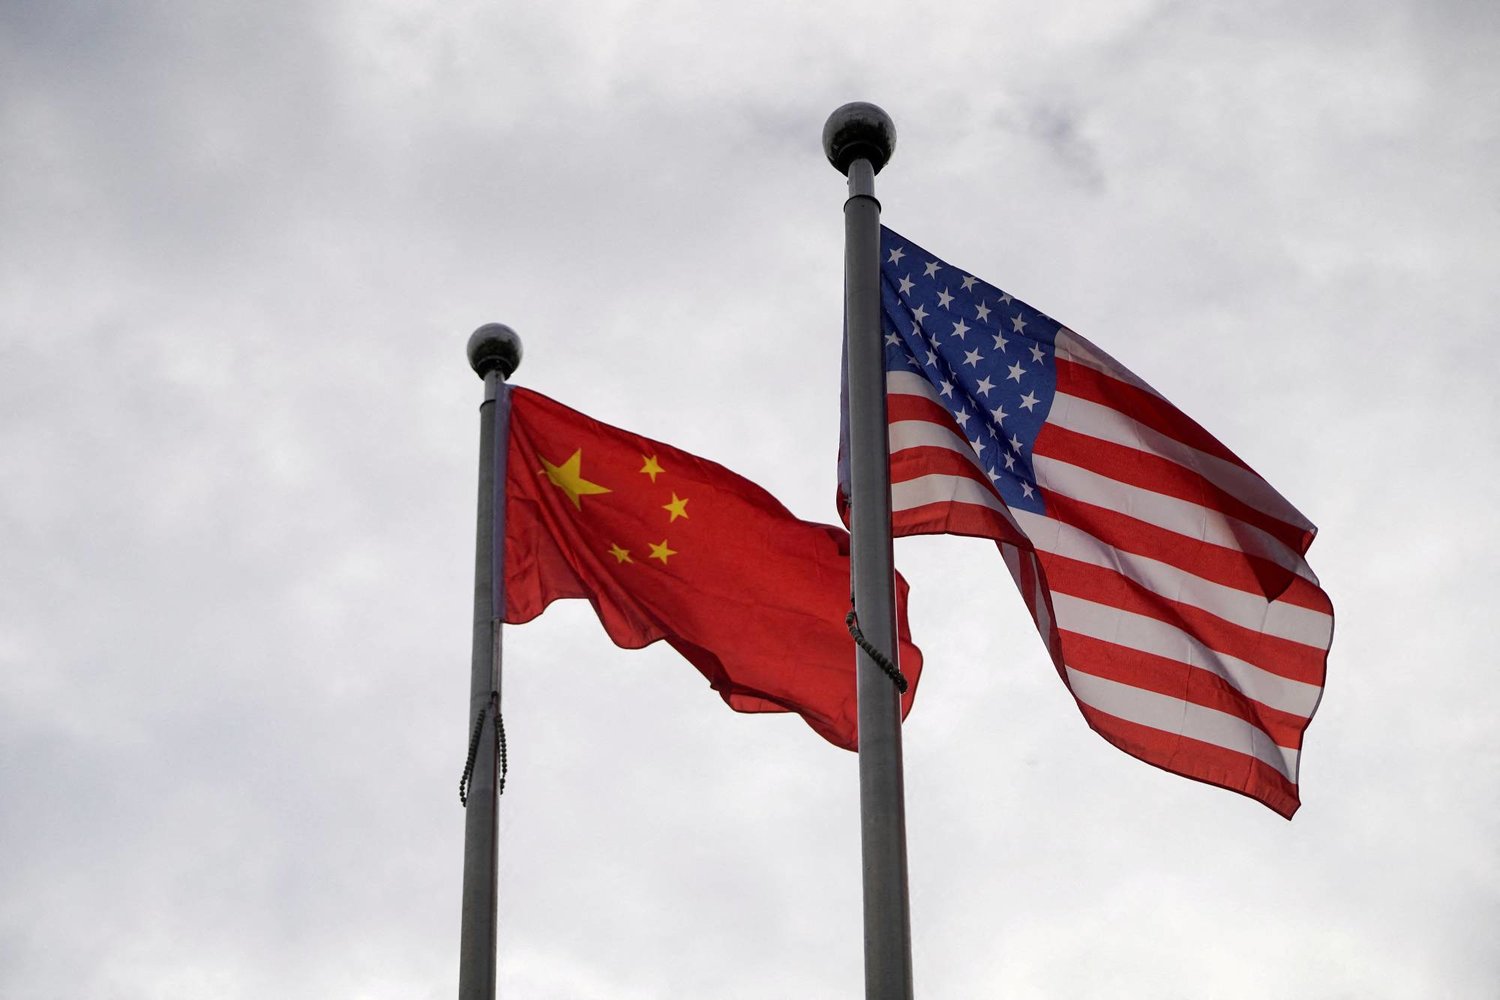 علما الولايات المتحدة (يمين) والصين يرفرفان خارج مبنى شركة في شنغهاي بالصين في 16 نوفمبر 2021 (رويترز)